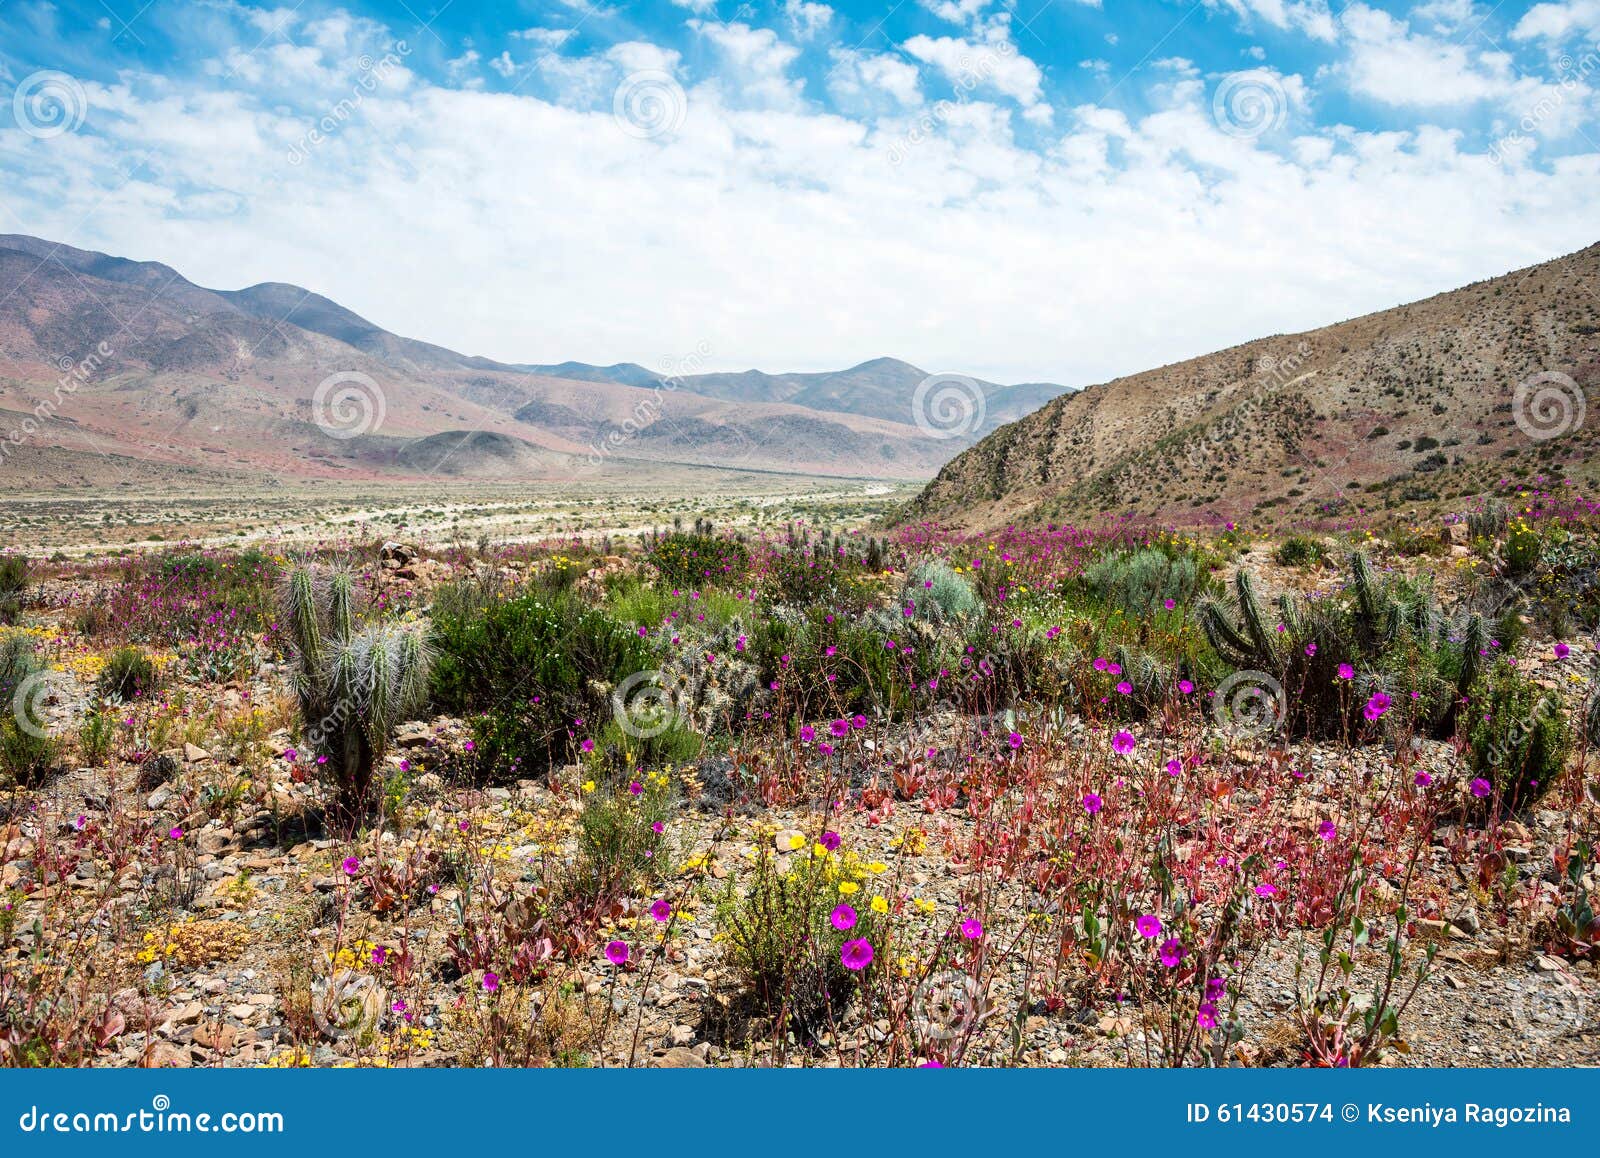 flowering desert in the chilean atacama desert